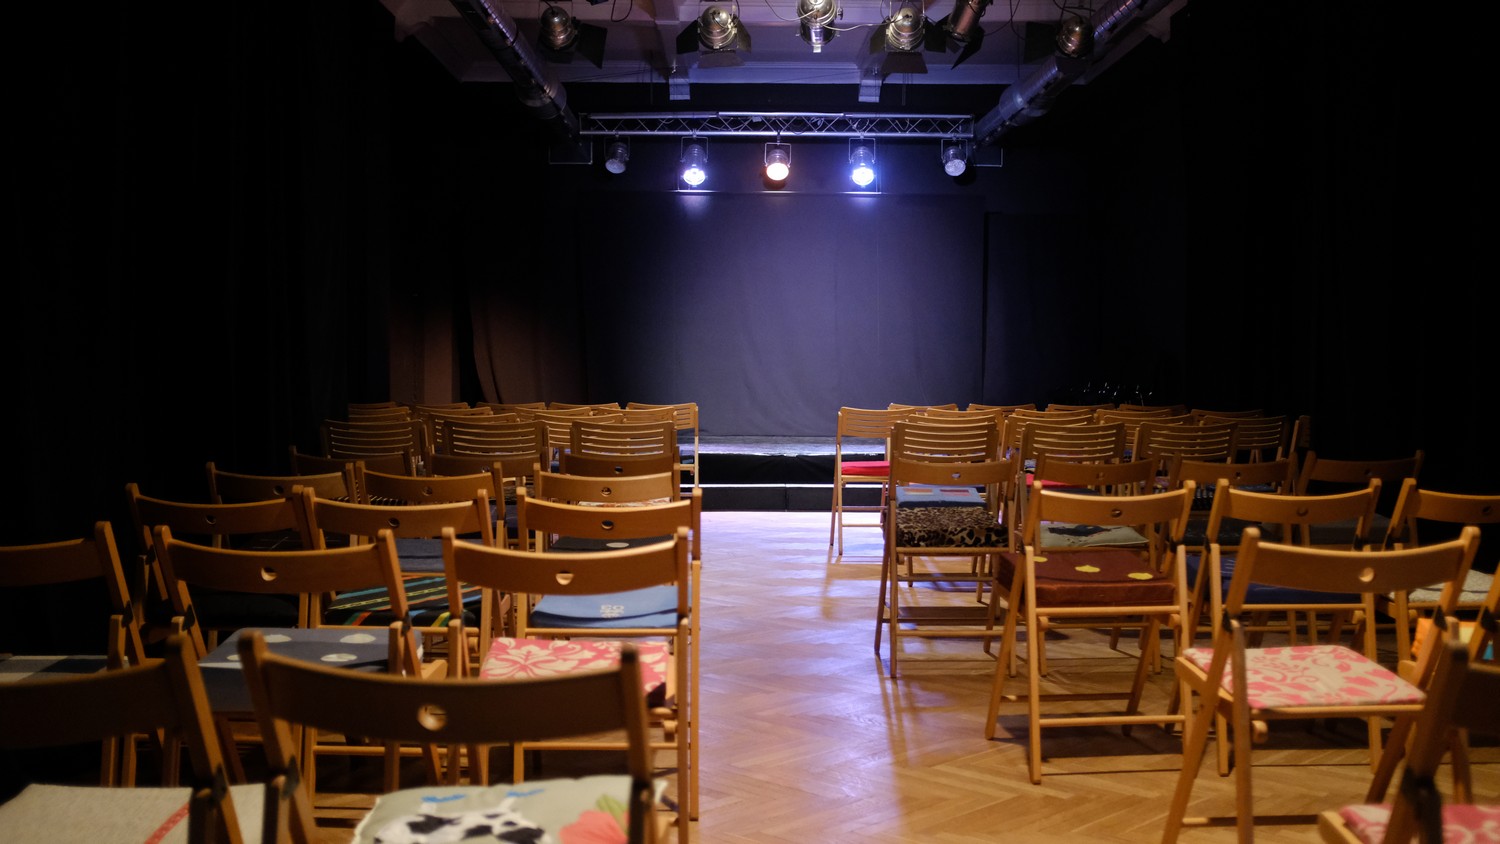 Foto mit Blick aus dem bestuhlten Saal zur Bühne im Scheinwerferlicht